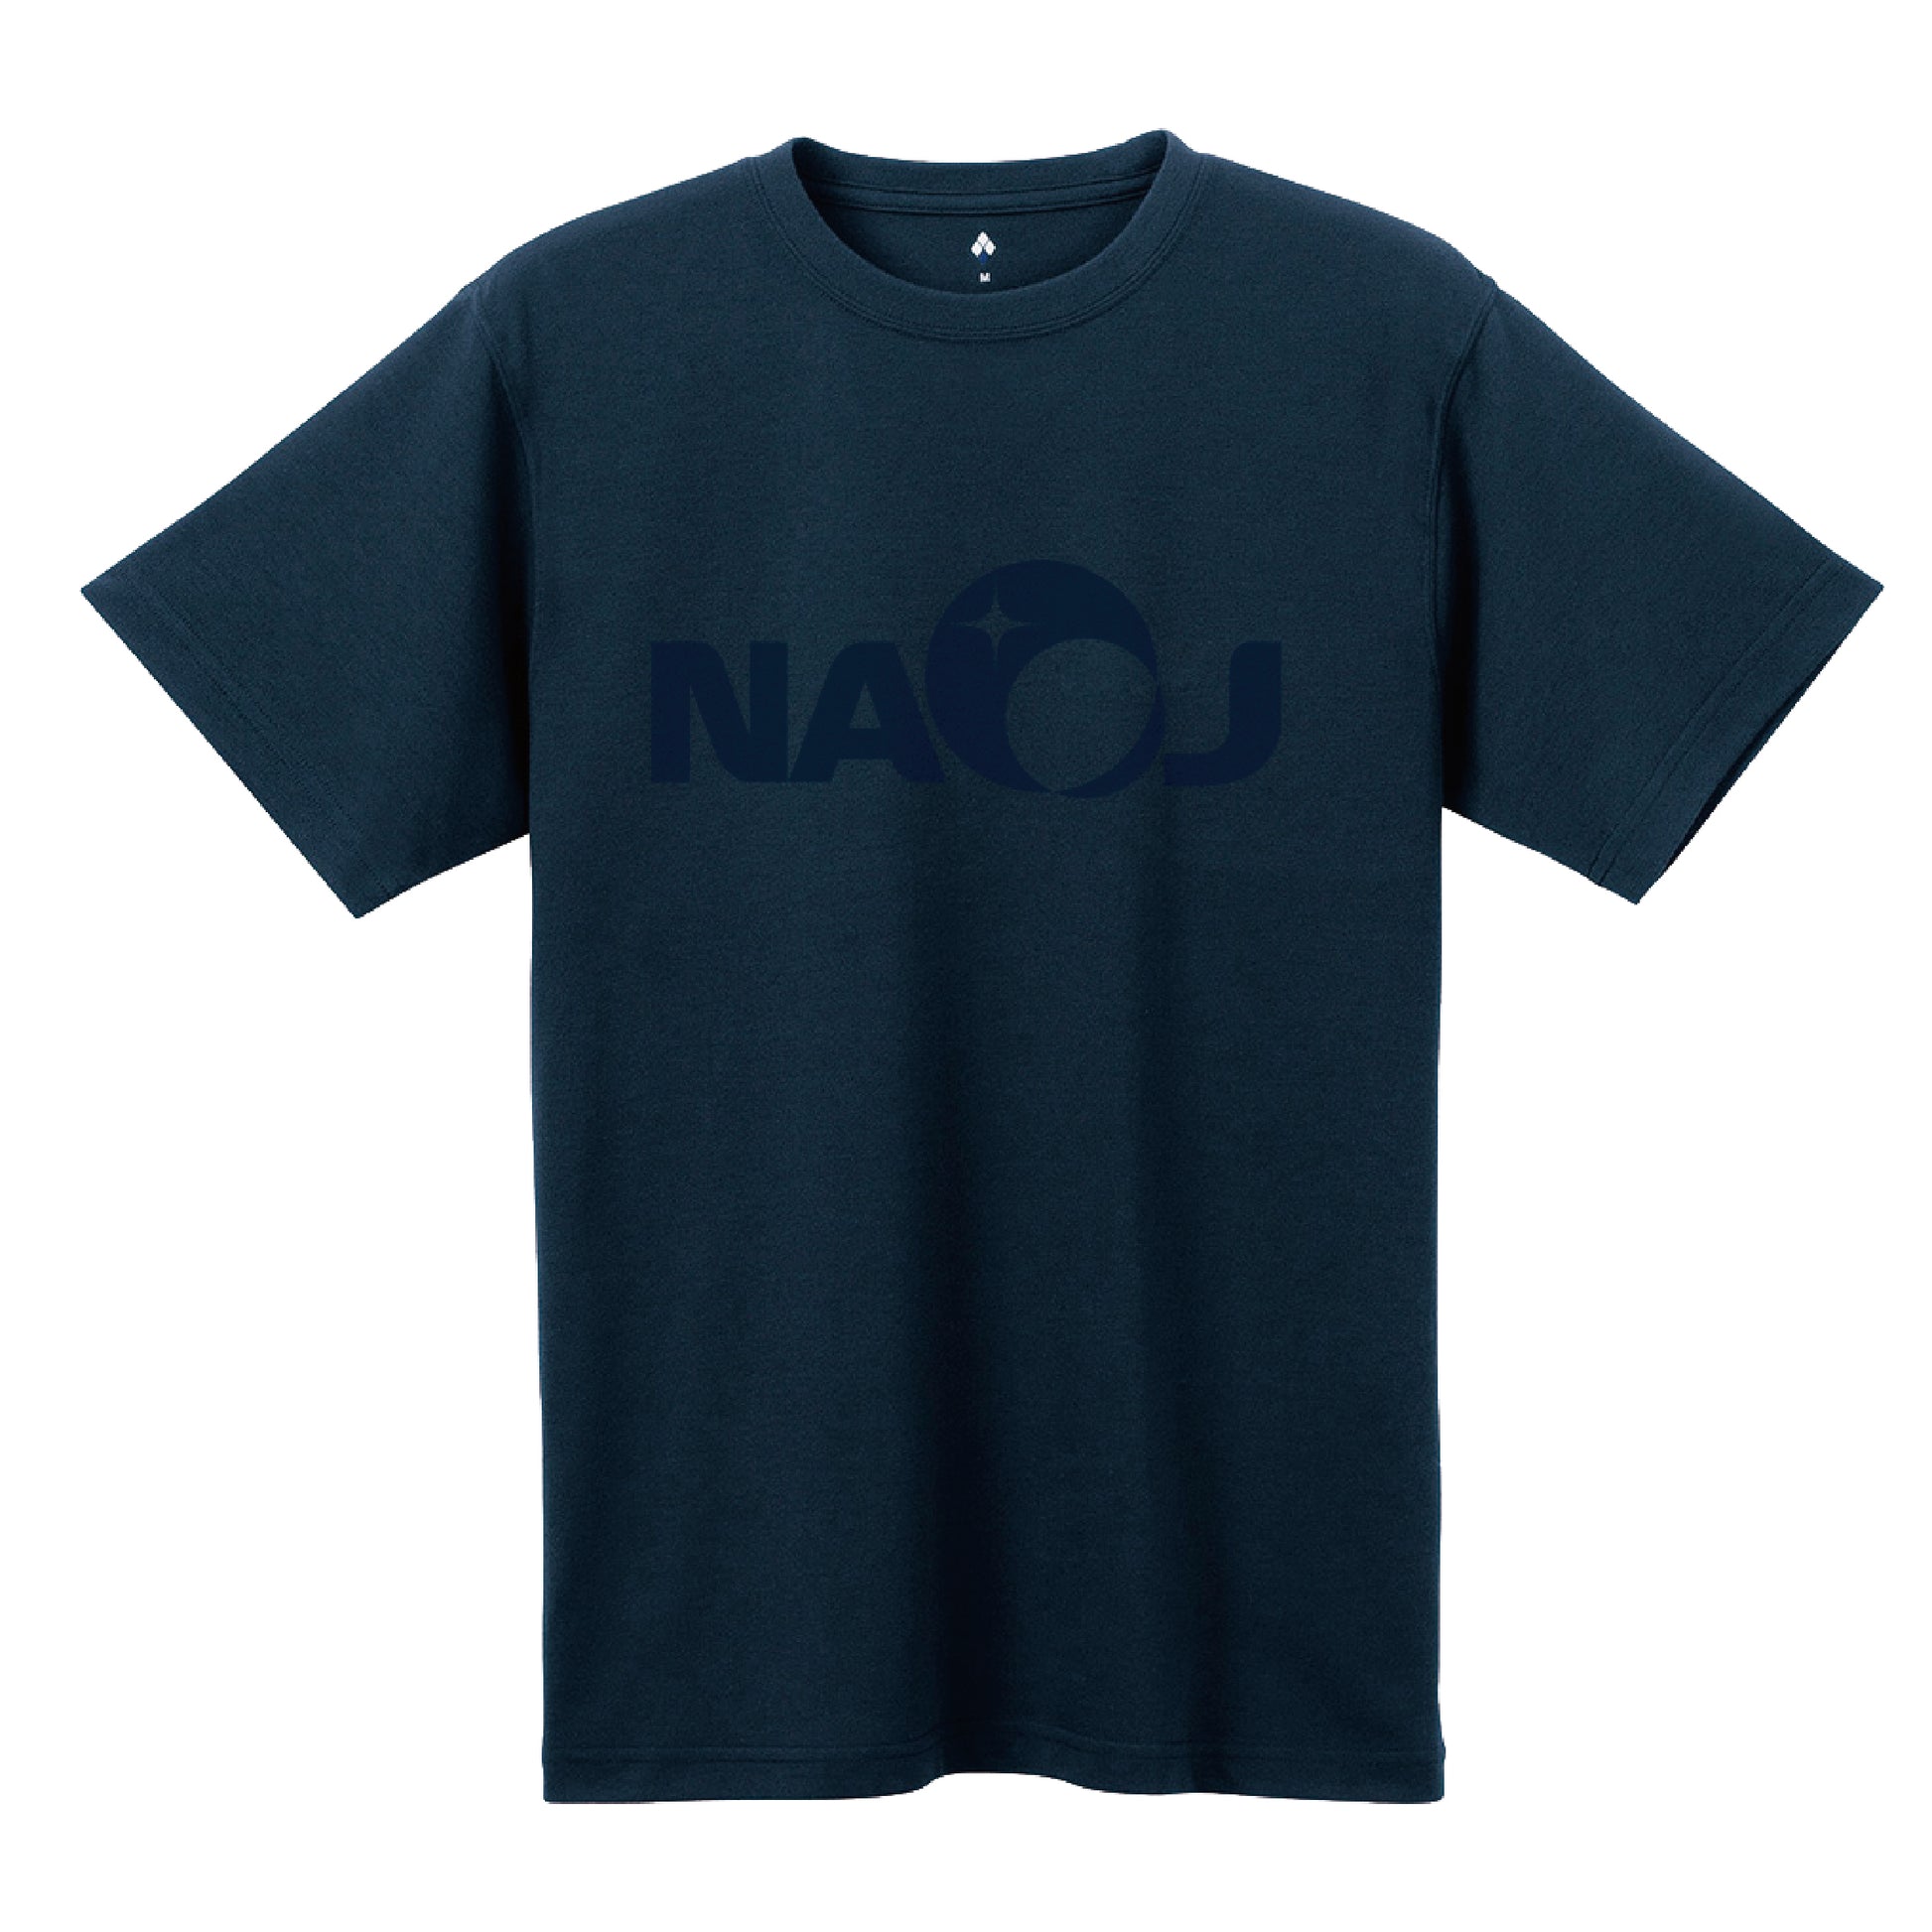 国立天文台 NAOJ ロゴマーク WIC. Tシャツ ネイビー x ネイビー S 00